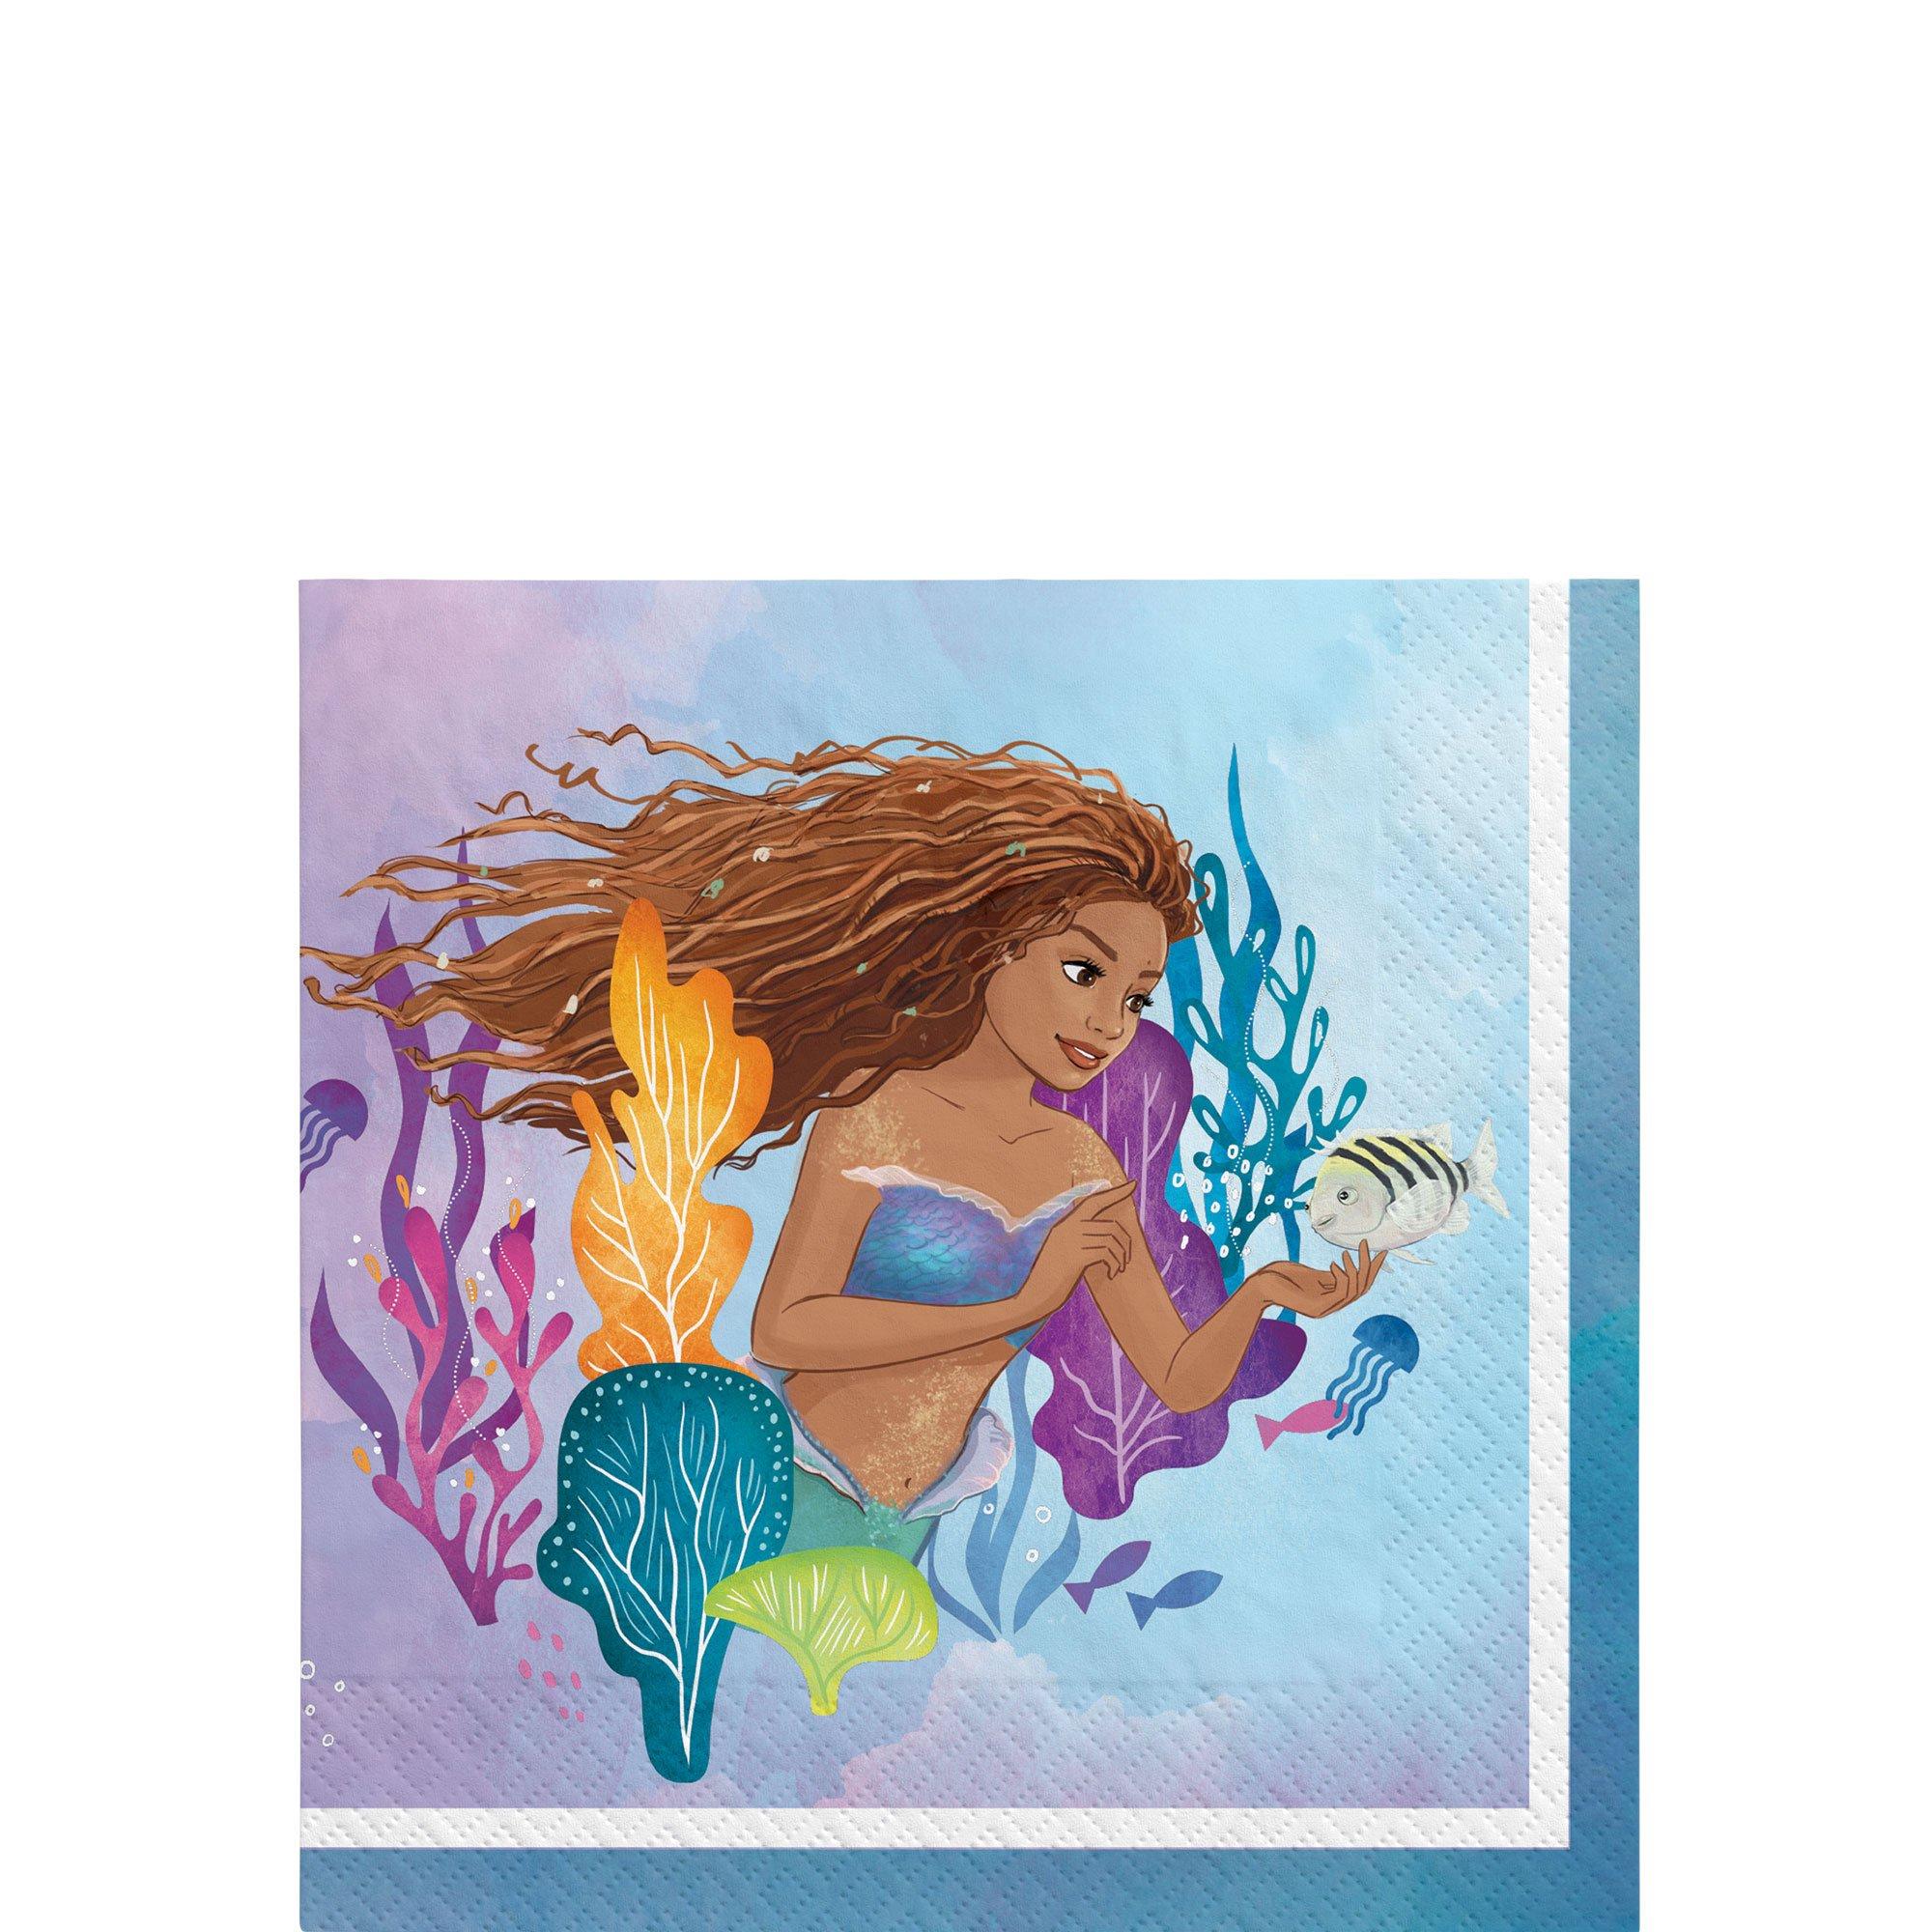 Ariel the Little Mermaid Sparkle 9oz Paper Cups (8ct)